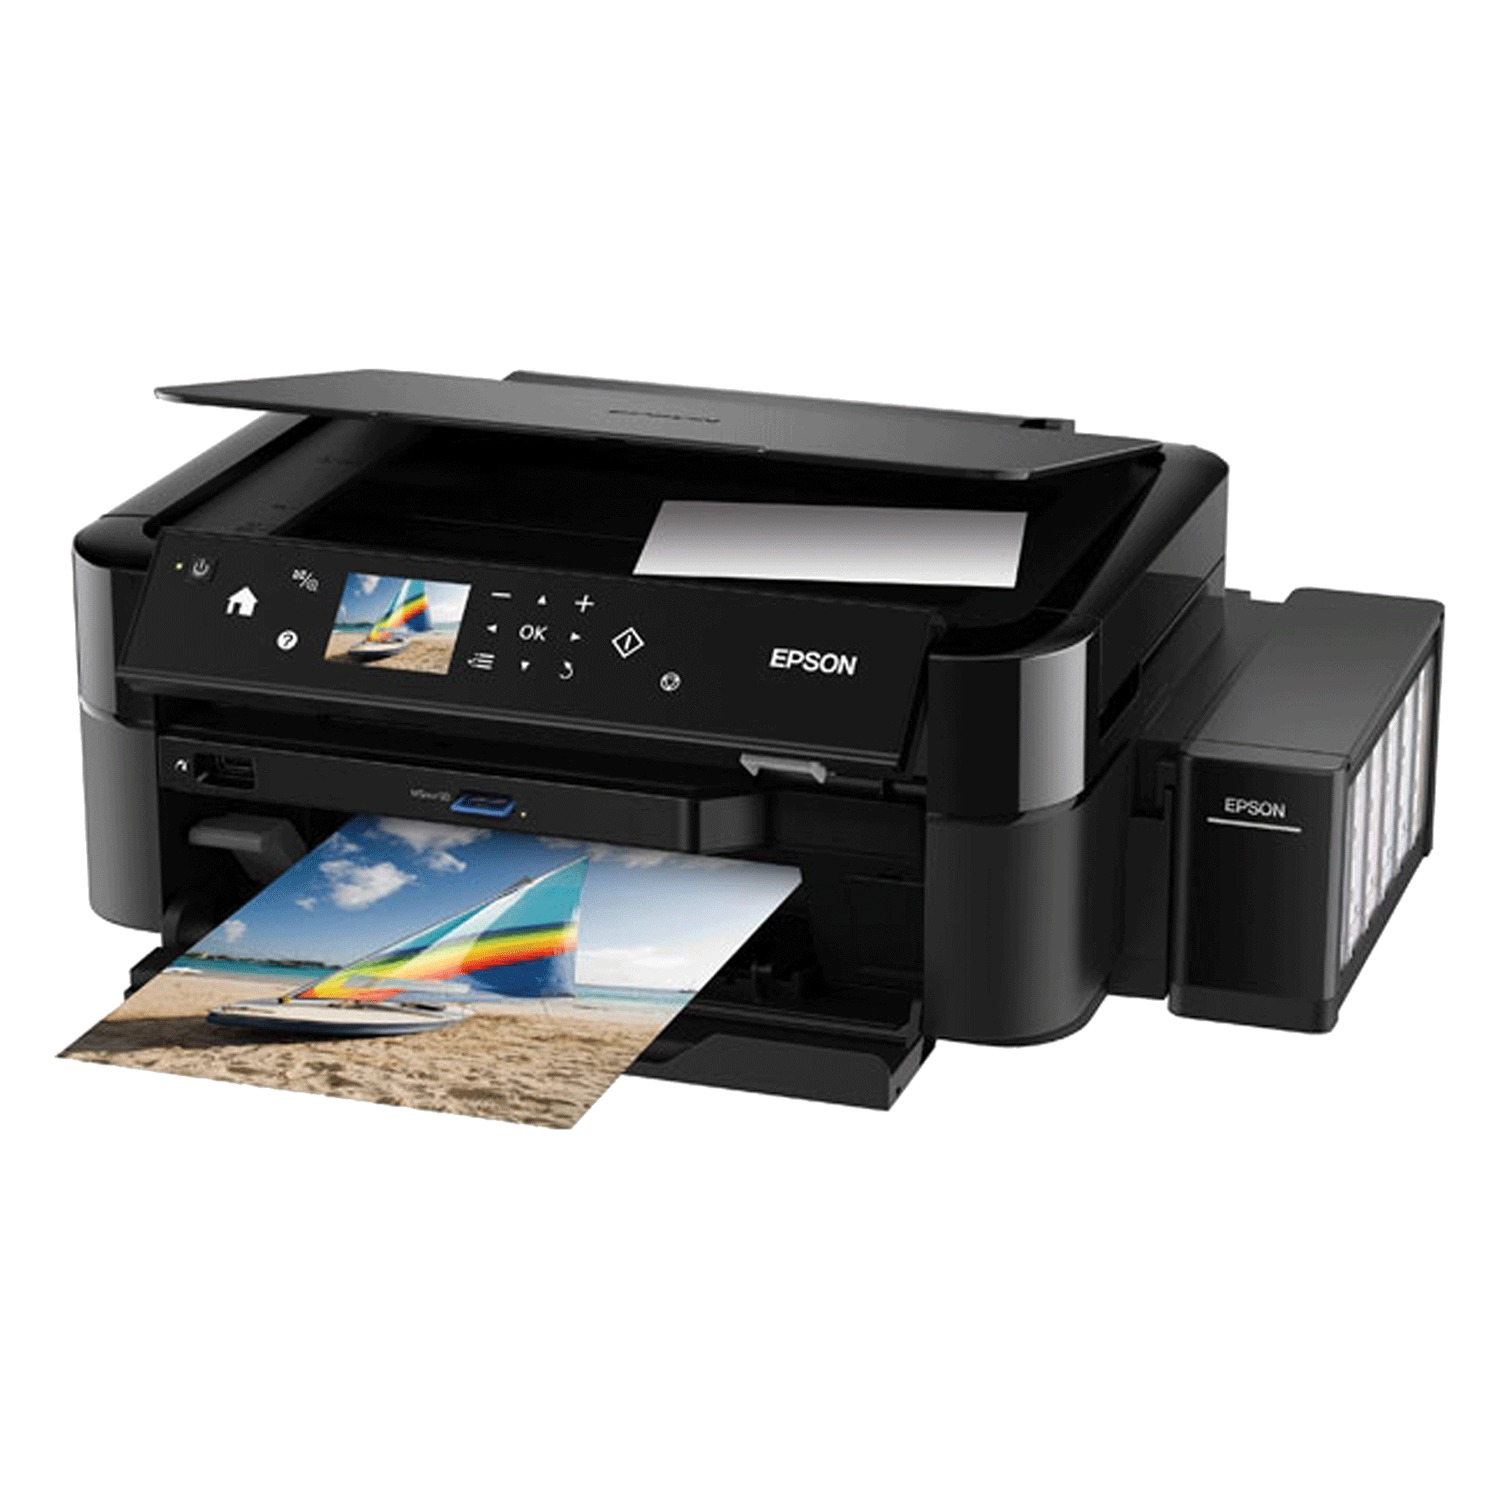 Купить принтер для дома недорого в спб